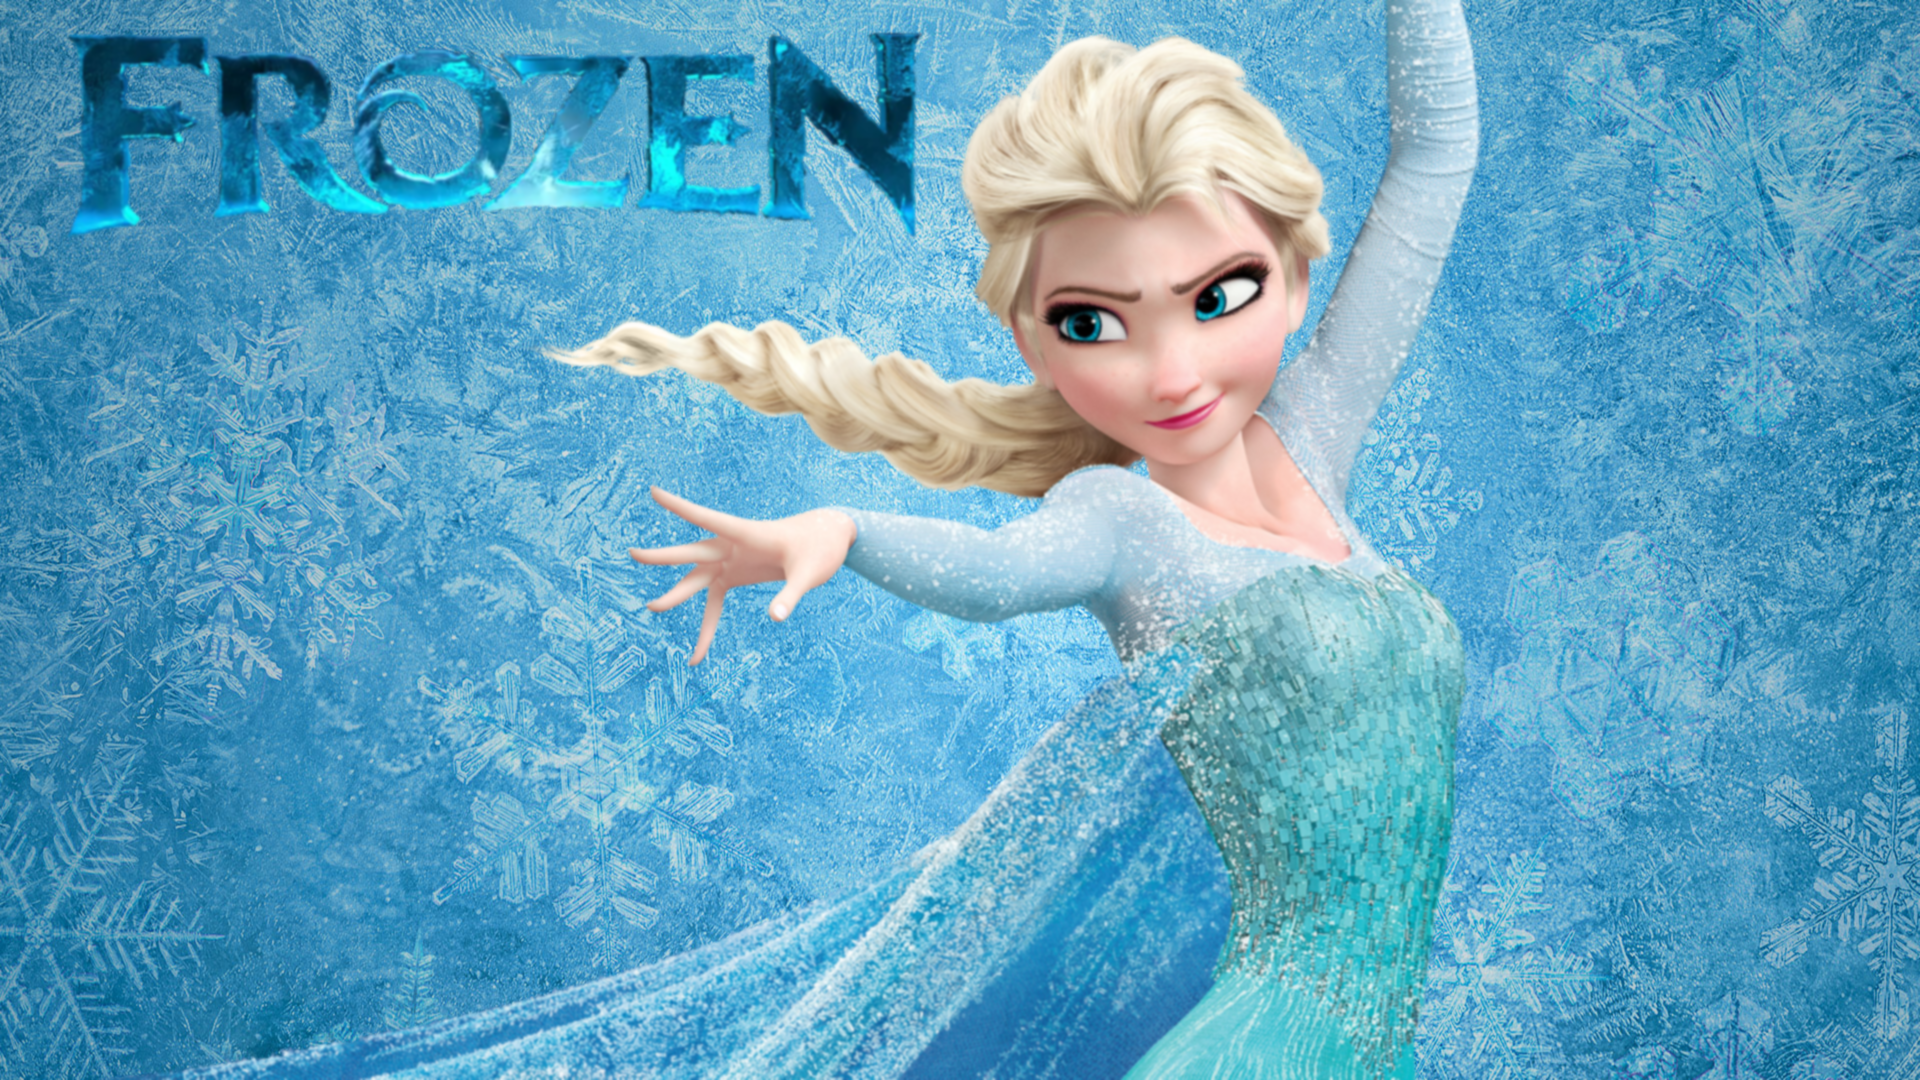 HD Frozen Elsa Wallpaper 1920x1080 by robotthunder500 1920x1080